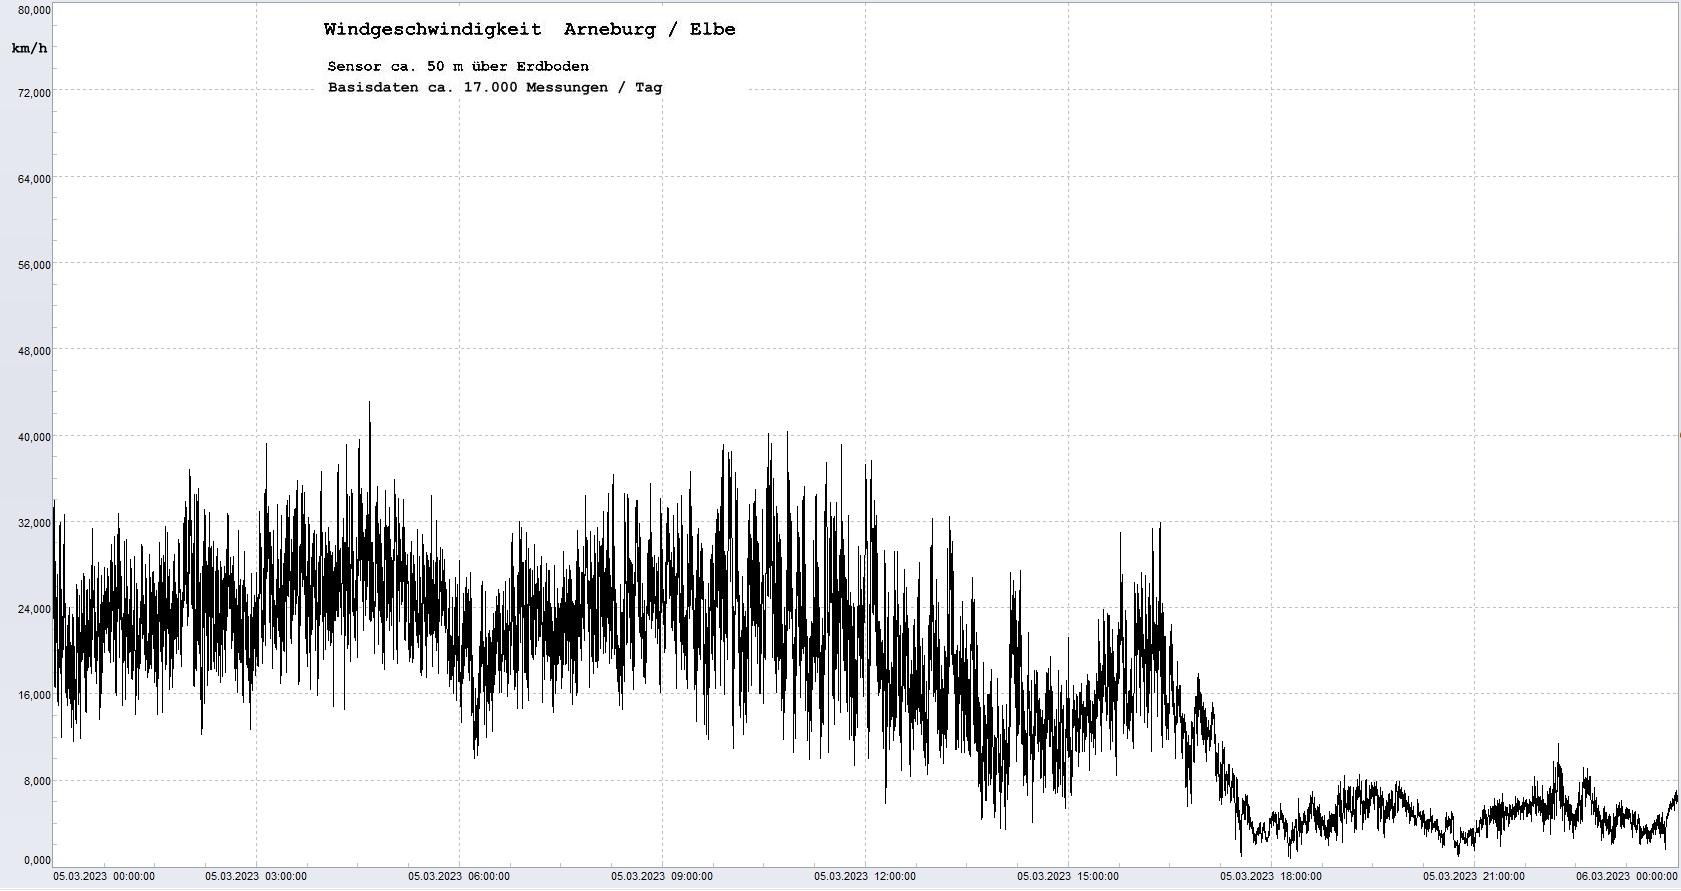 Arneburg Tages-Diagramm Winddaten, 05.03.2023
  Diagramm, Sensor auf Gebäude, ca. 50 m über Erdboden, Basis: 5s-Aufzeichnung